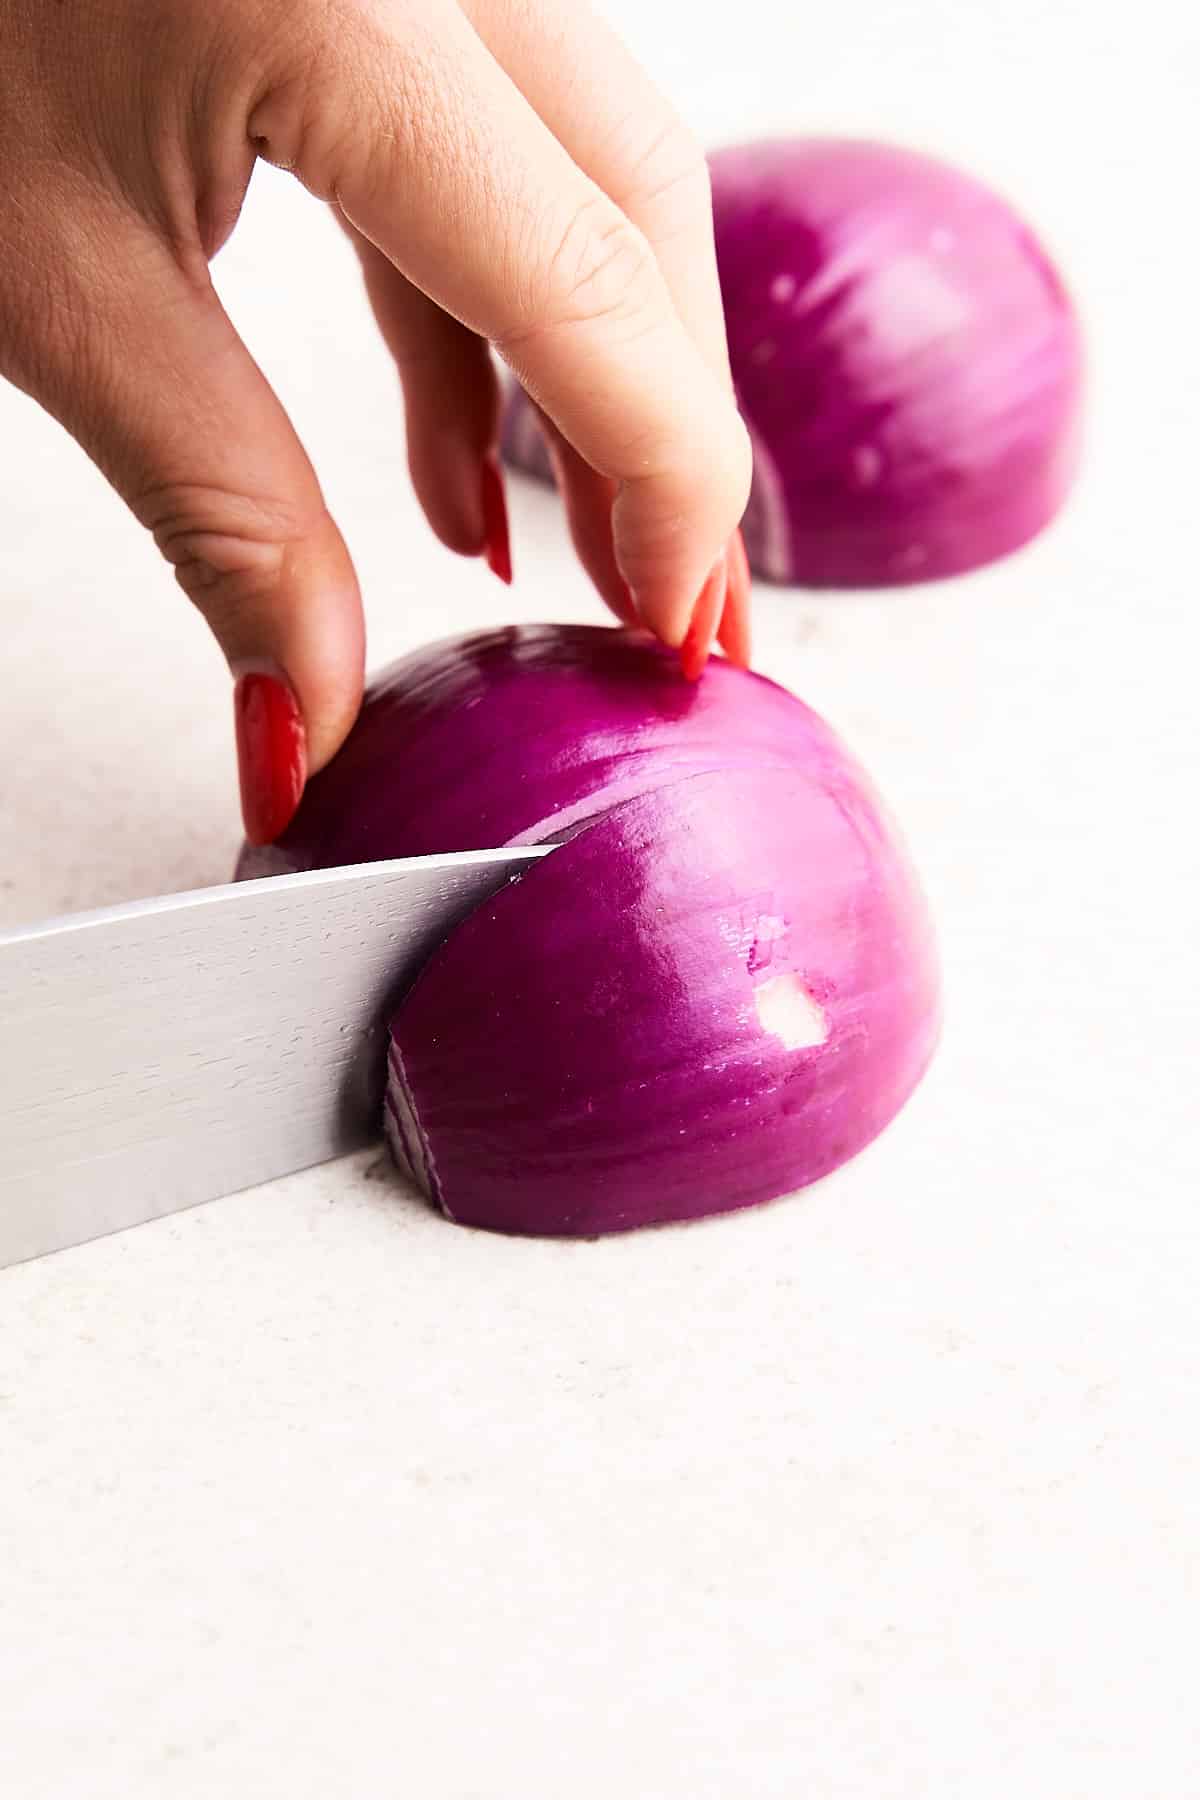 Chopping an onion.